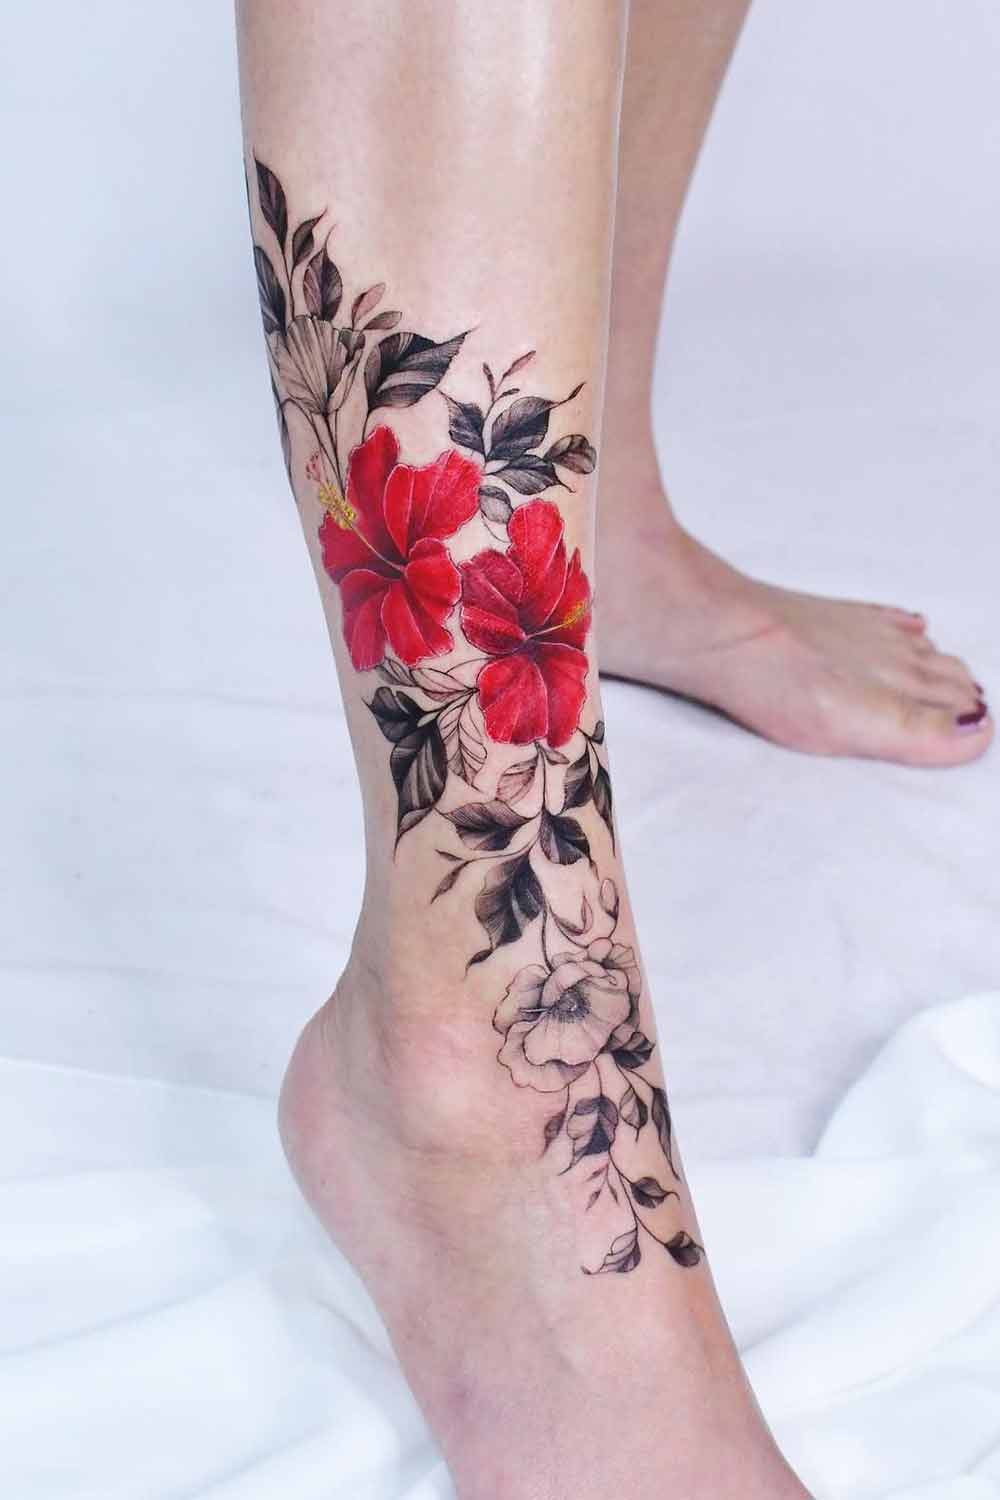 tatuagem-floral-no-tornozelo-com-flor-vermelha 